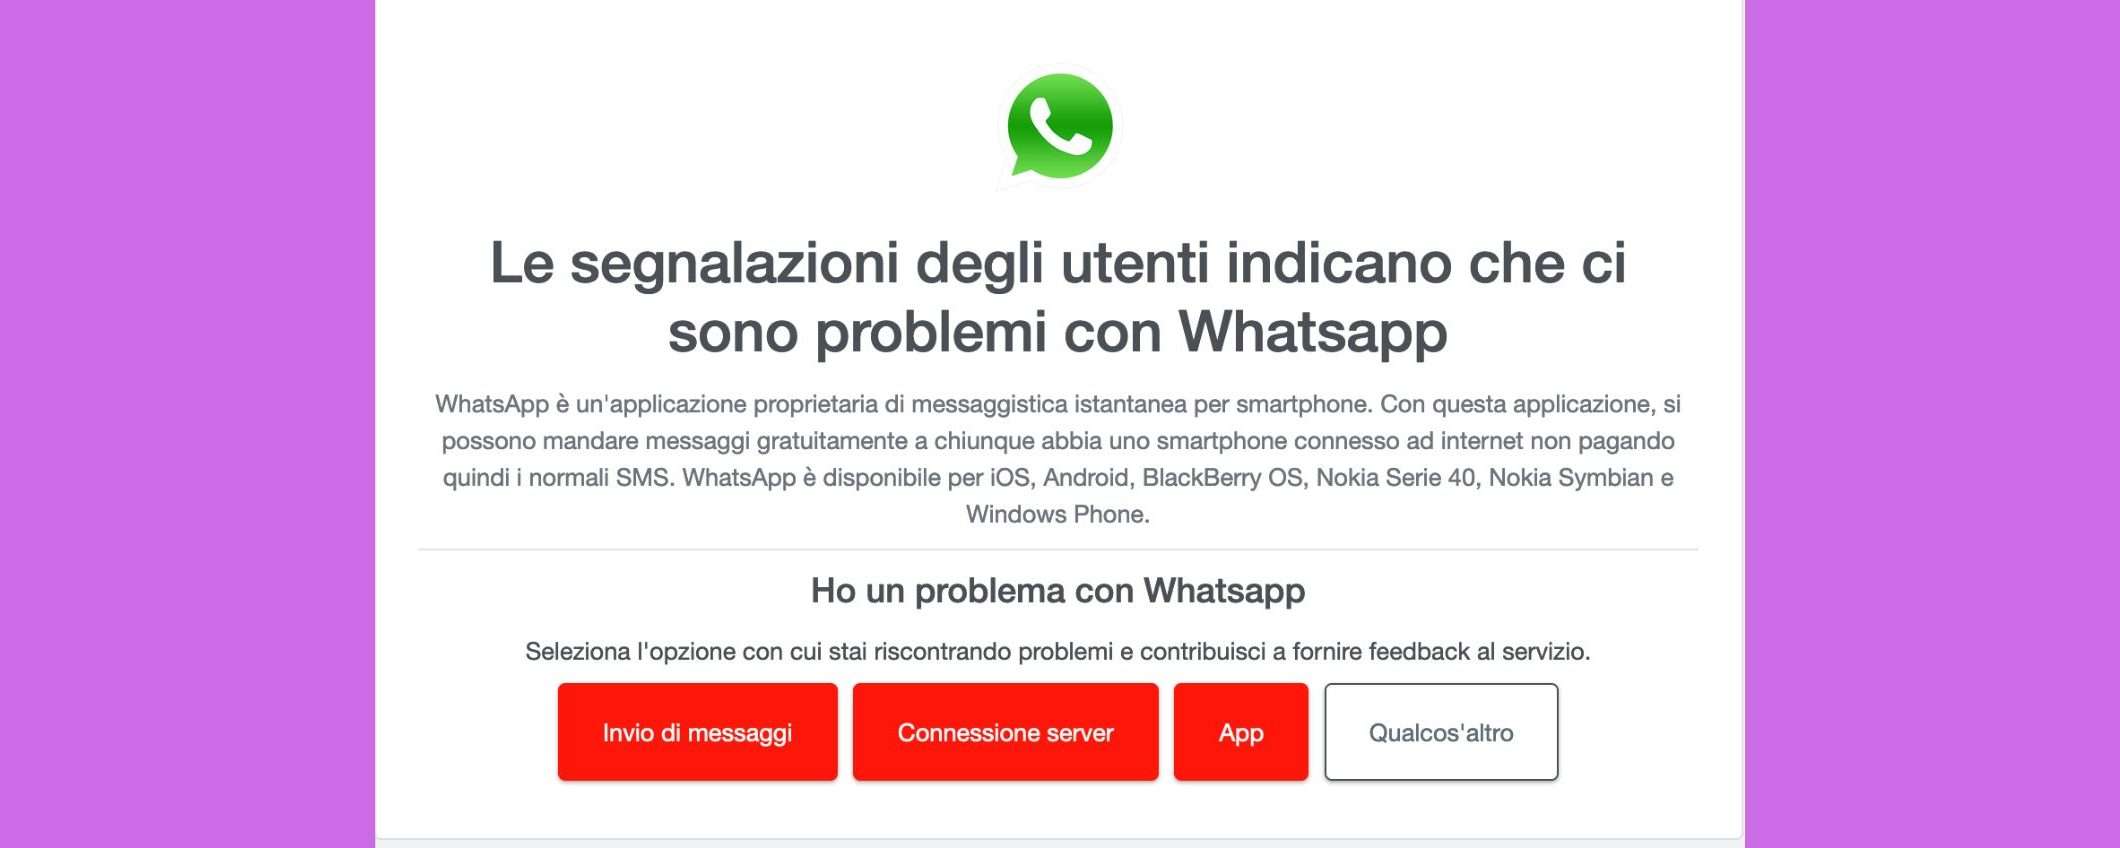 WhatsApp down ora: cosa sta succedendo?